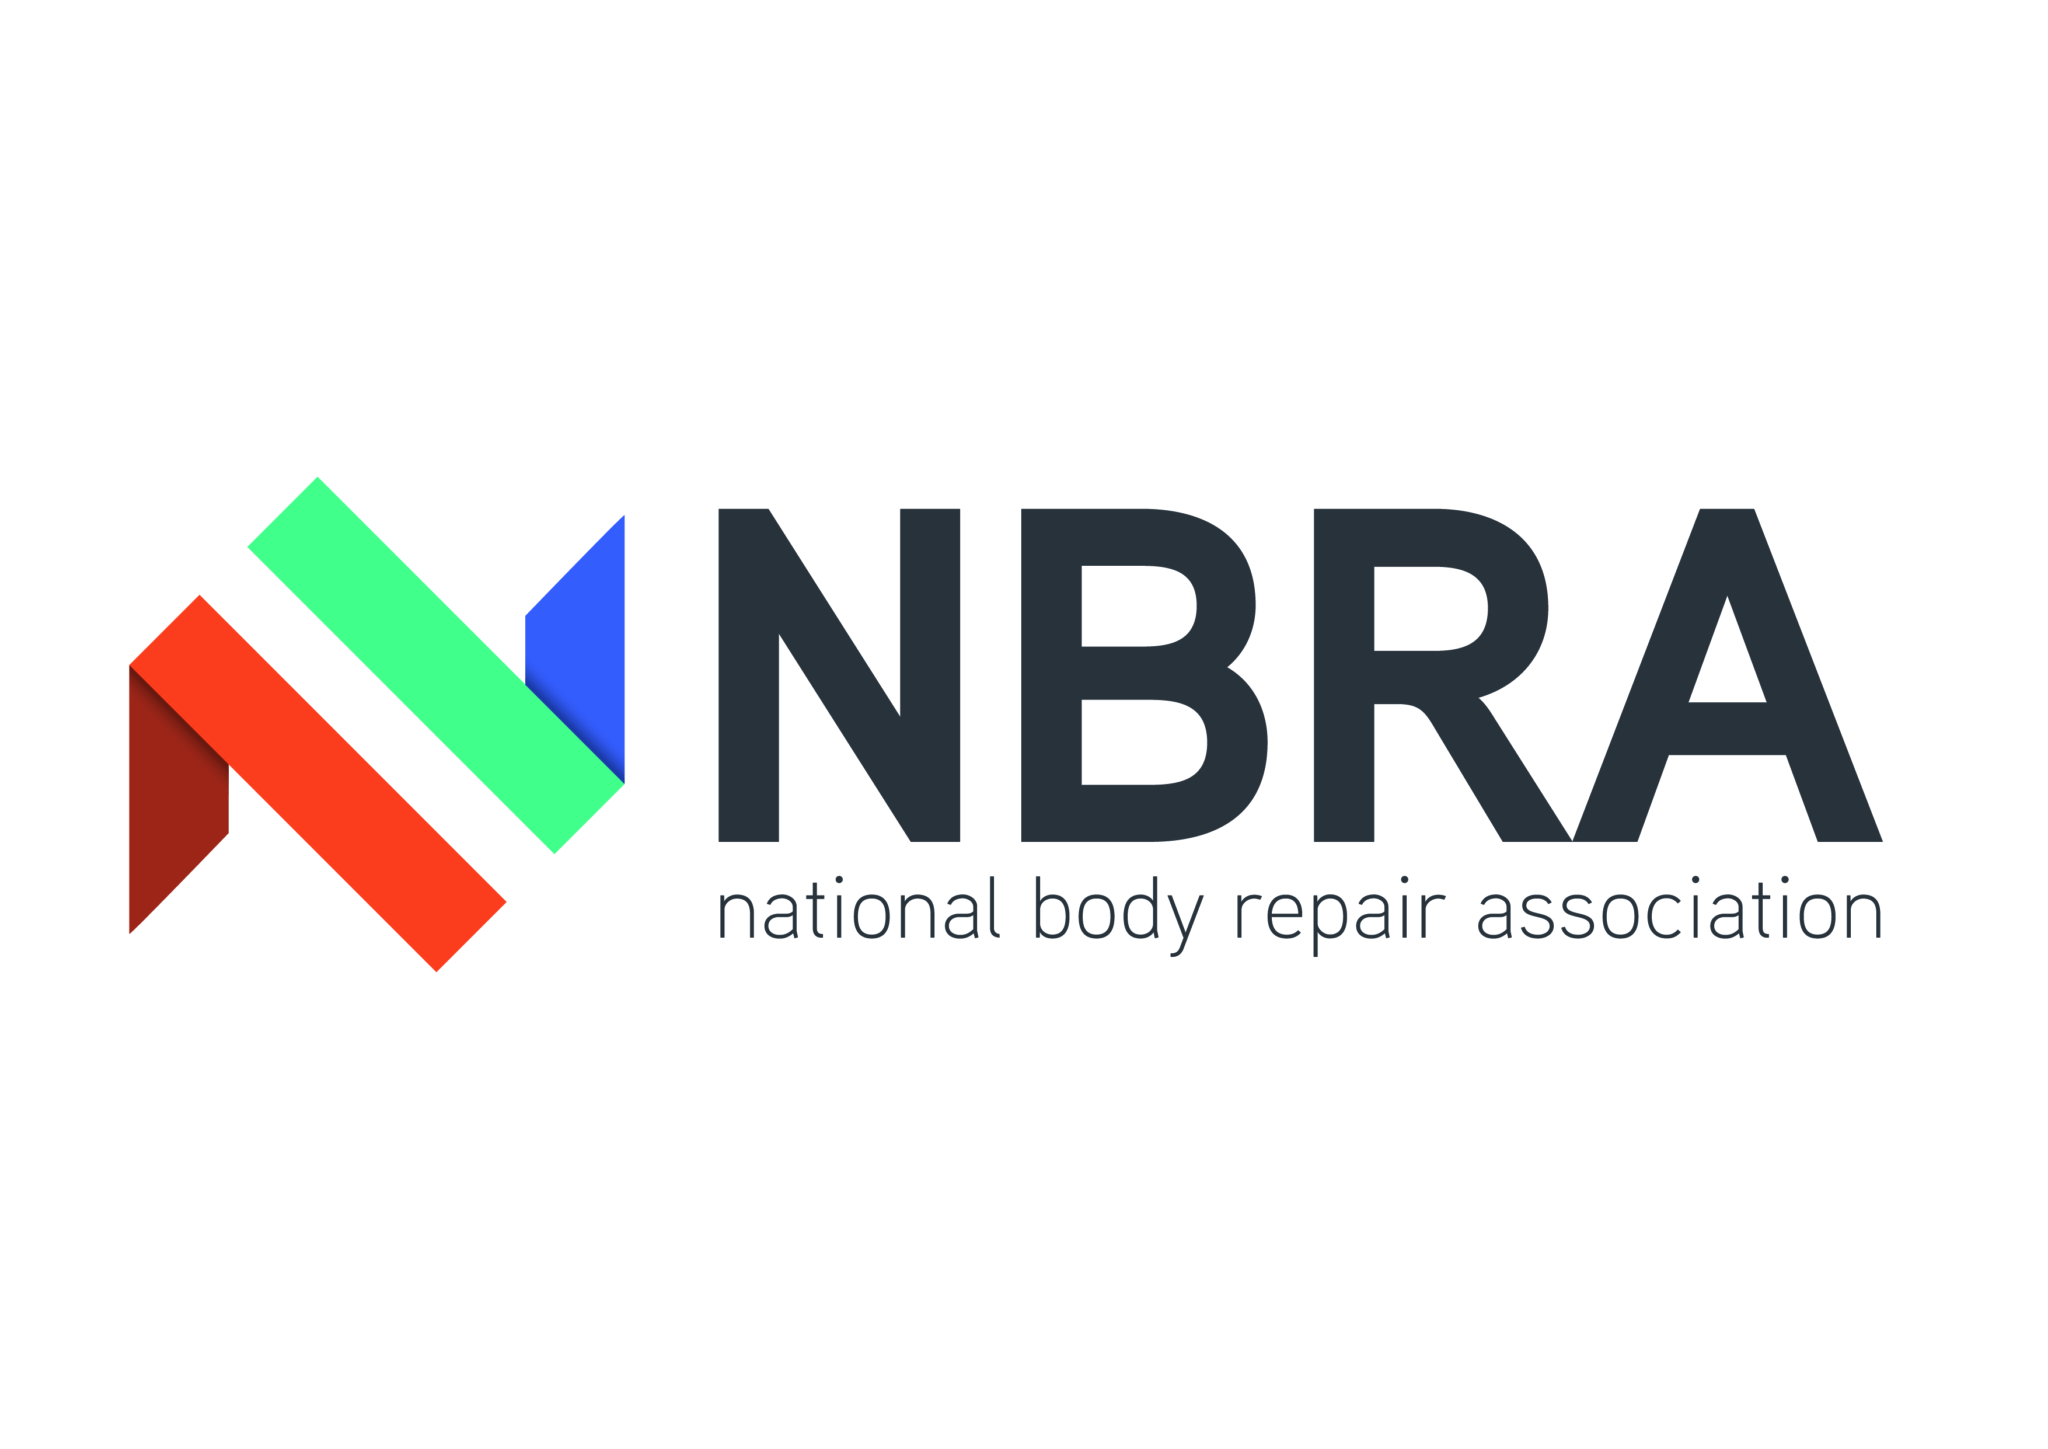 NBRA to present ‘Greener’ awards in September